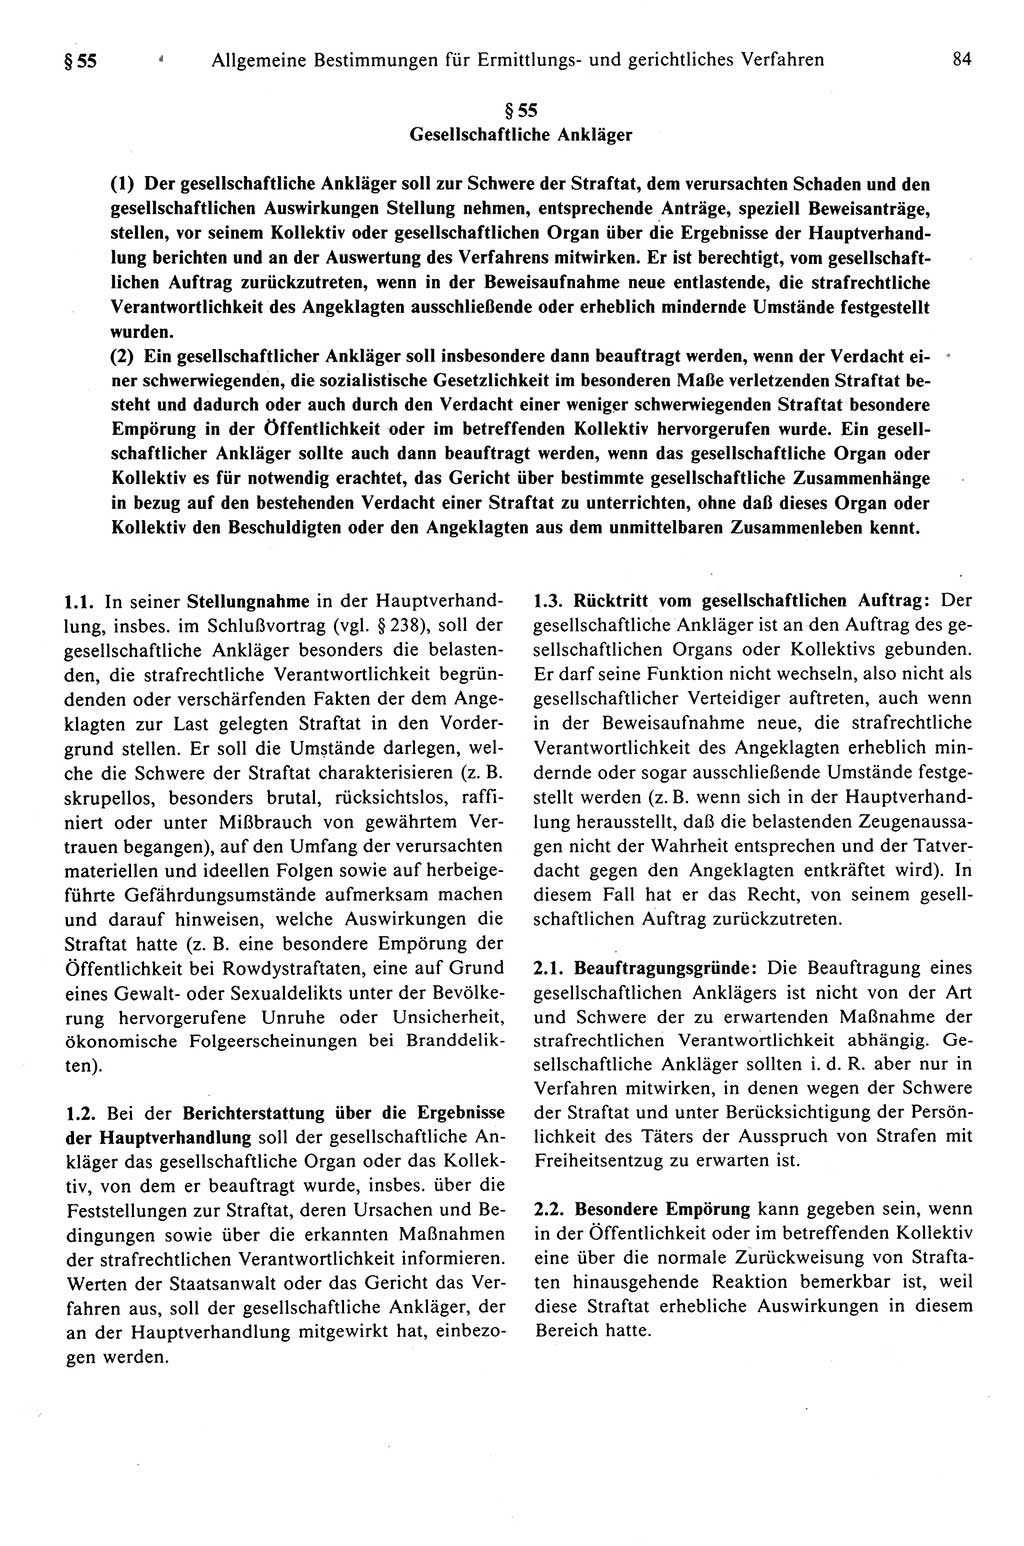 Strafprozeßrecht der DDR (Deutsche Demokratische Republik), Kommentar zur Strafprozeßordnung (StPO) 1989, Seite 84 (Strafprozeßr. DDR Komm. StPO 1989, S. 84)